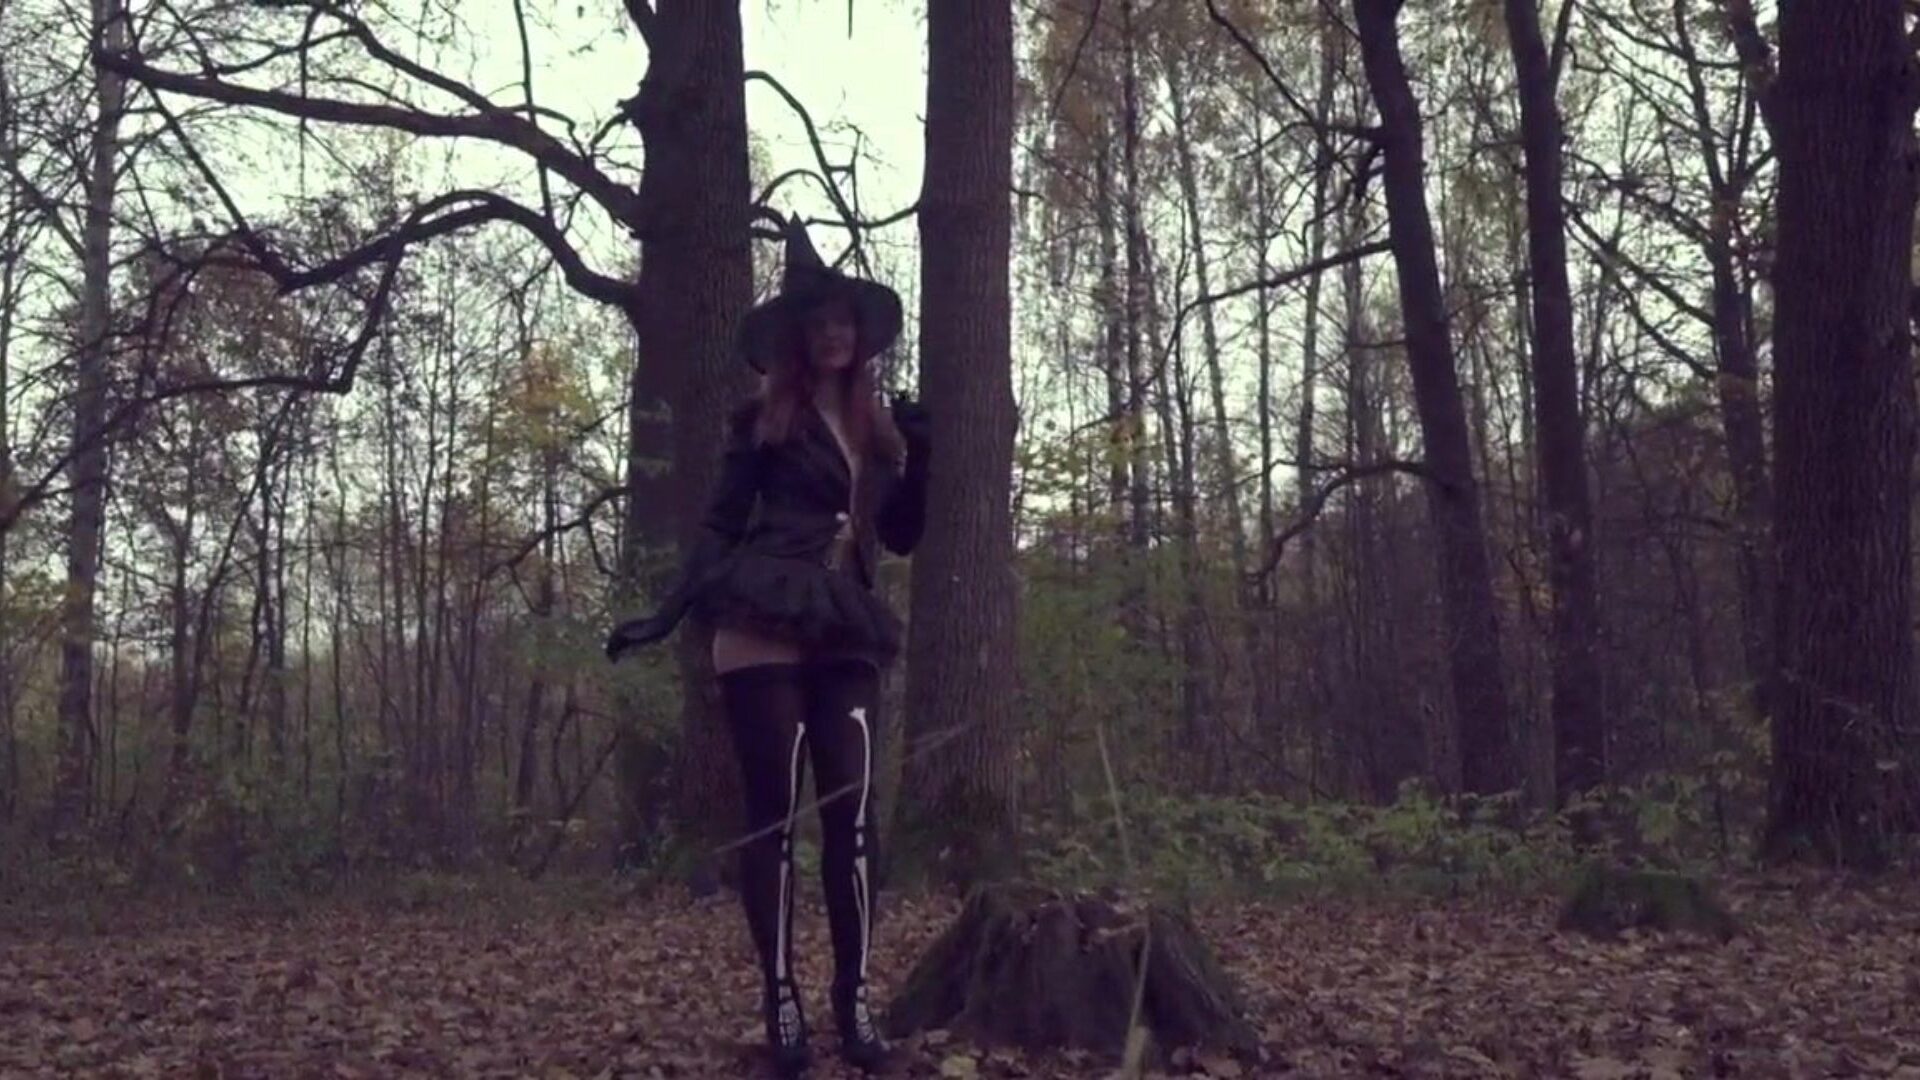 ta av meg Halloween-kjolen jeny smith eksponert i skogen se hele videoen på jenysmith.net musikk bajun på icons8